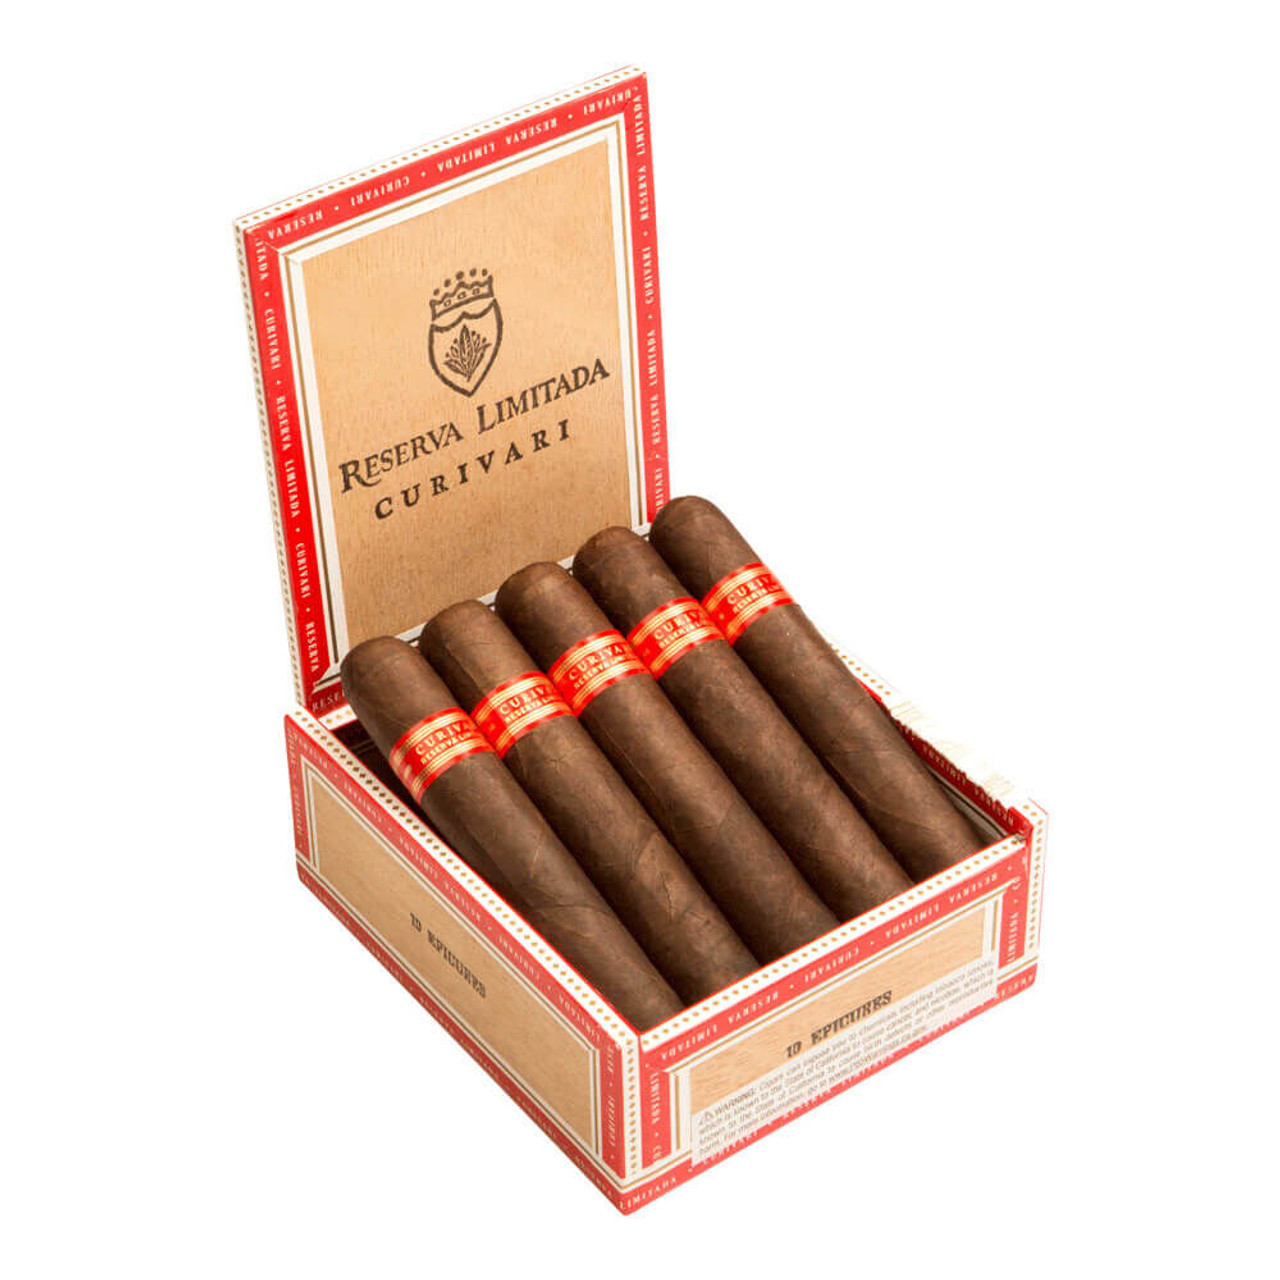 Curivari Reserva Limitada Classica Epicures Cigars - 4.5 x 52 (Box of 10) Open